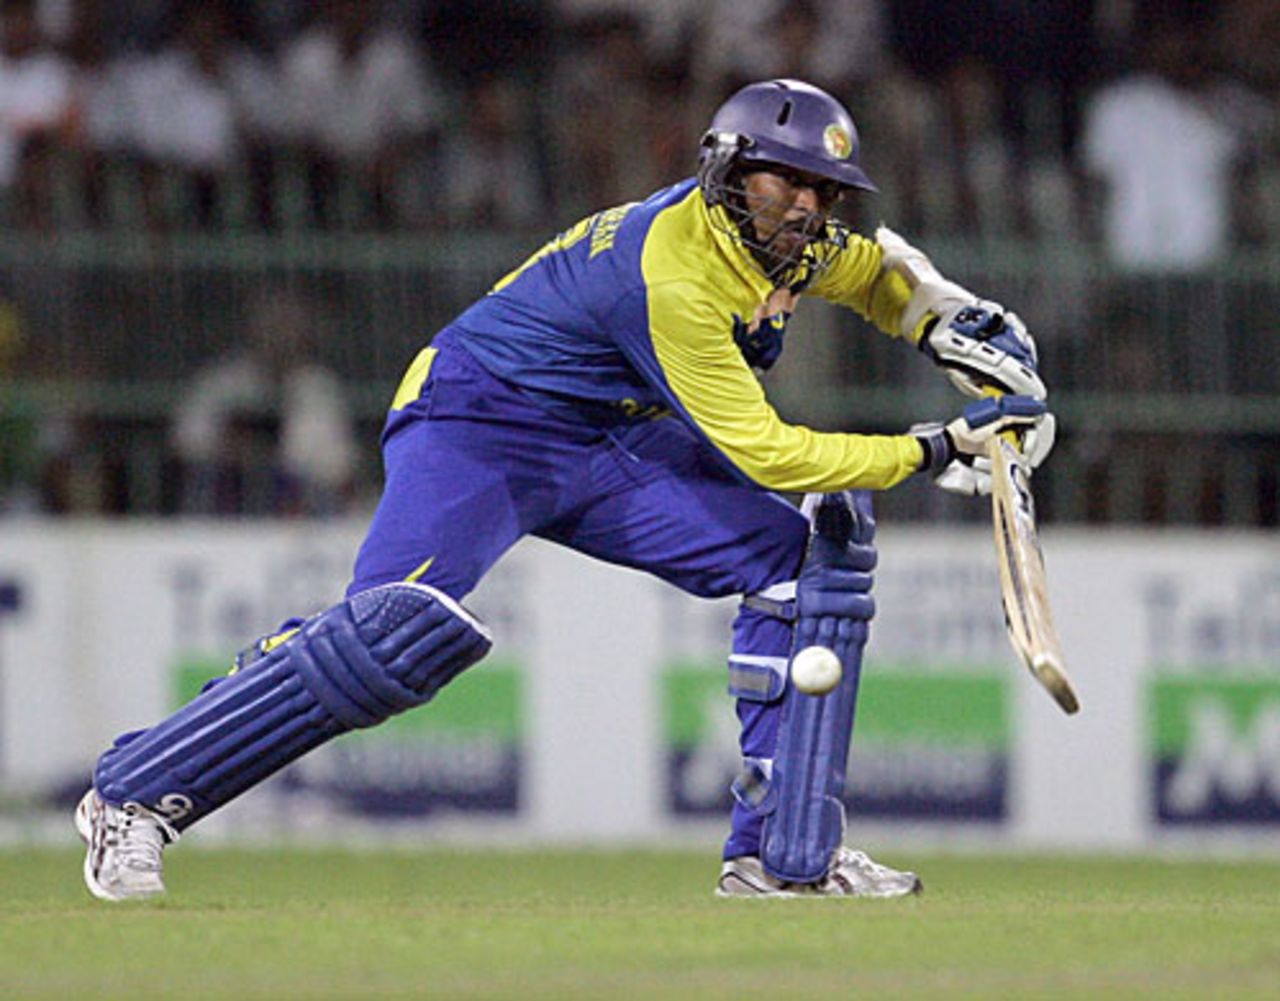 Tillakaratne Dilshan nudges the ball, Sri Lanka v New Zealand, 1st Twenty20, Colombo, September 2, 2009